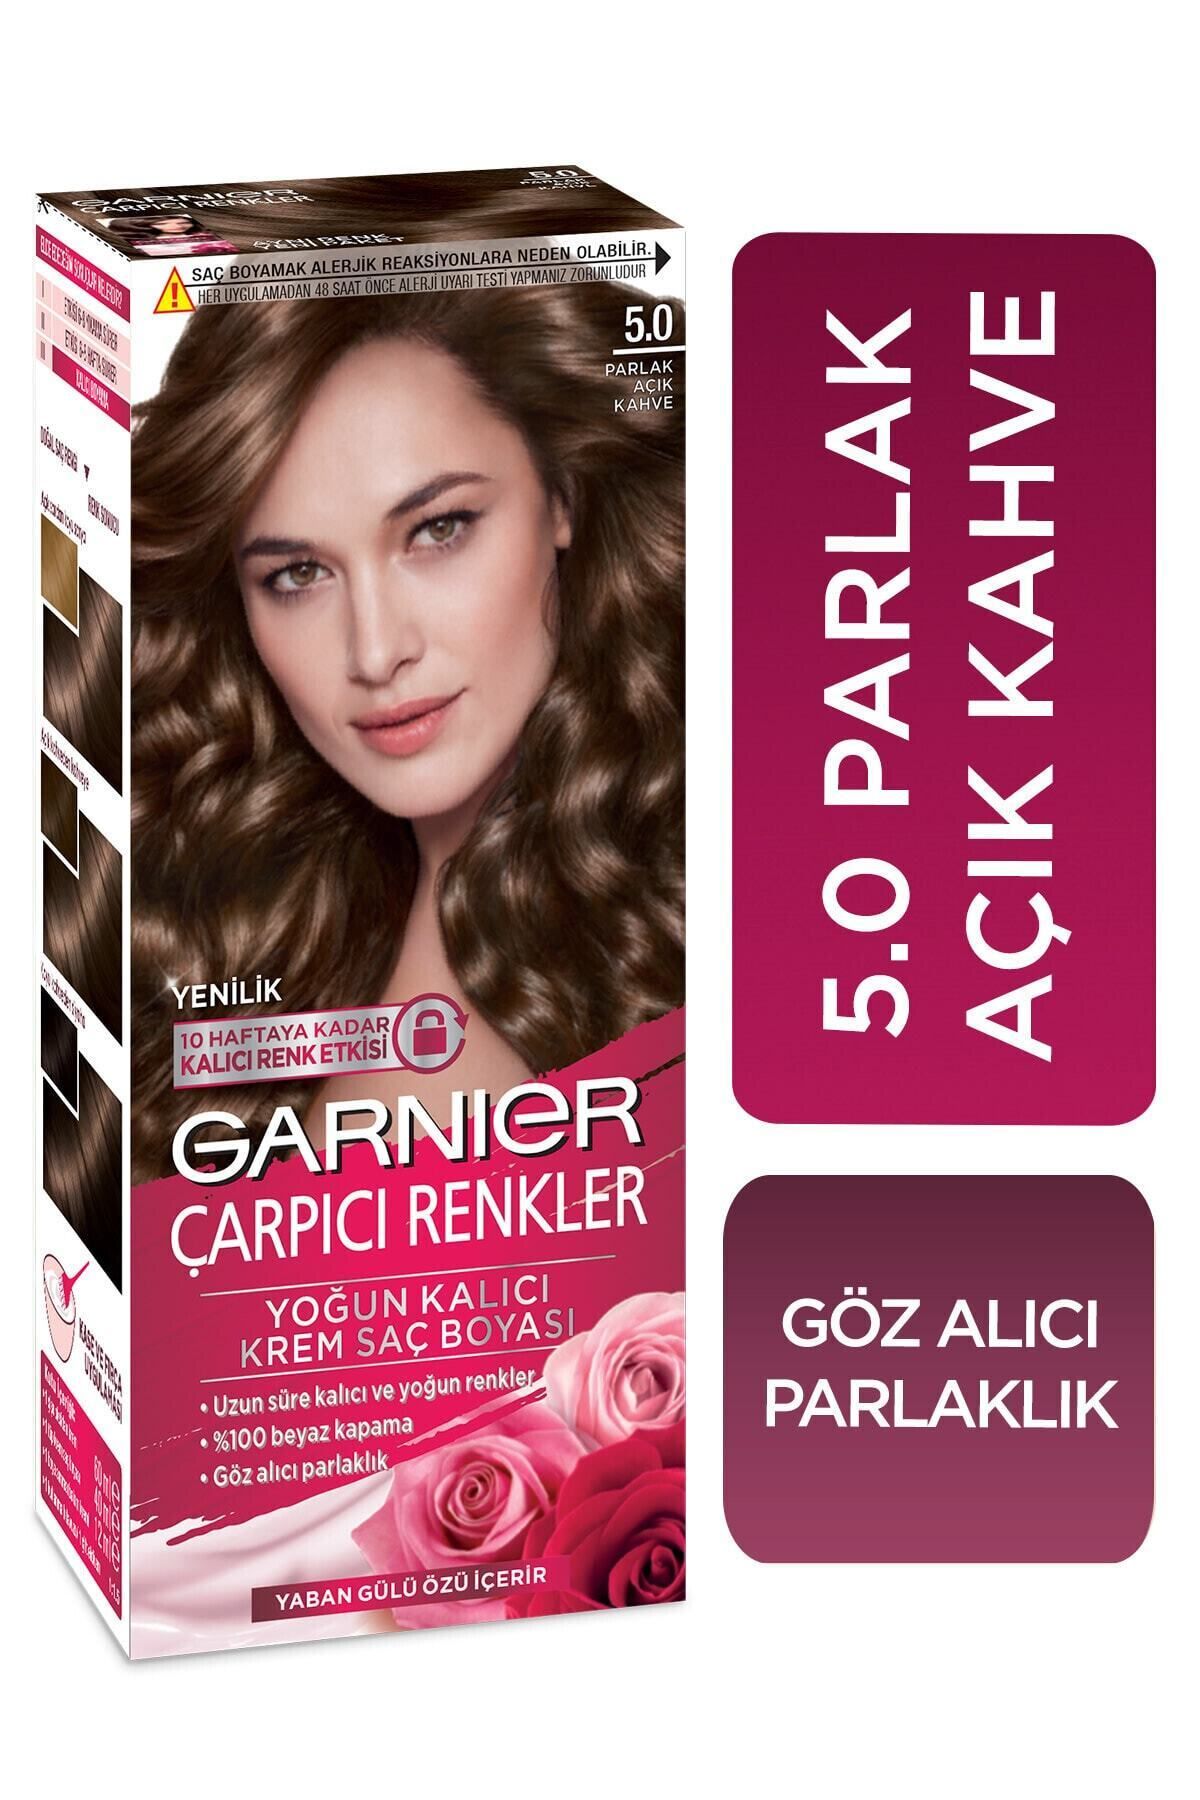 Garnier Saç Boyası - Çarpıcı Renkler 5.0 Parlak Açık Kahve 3600541136977